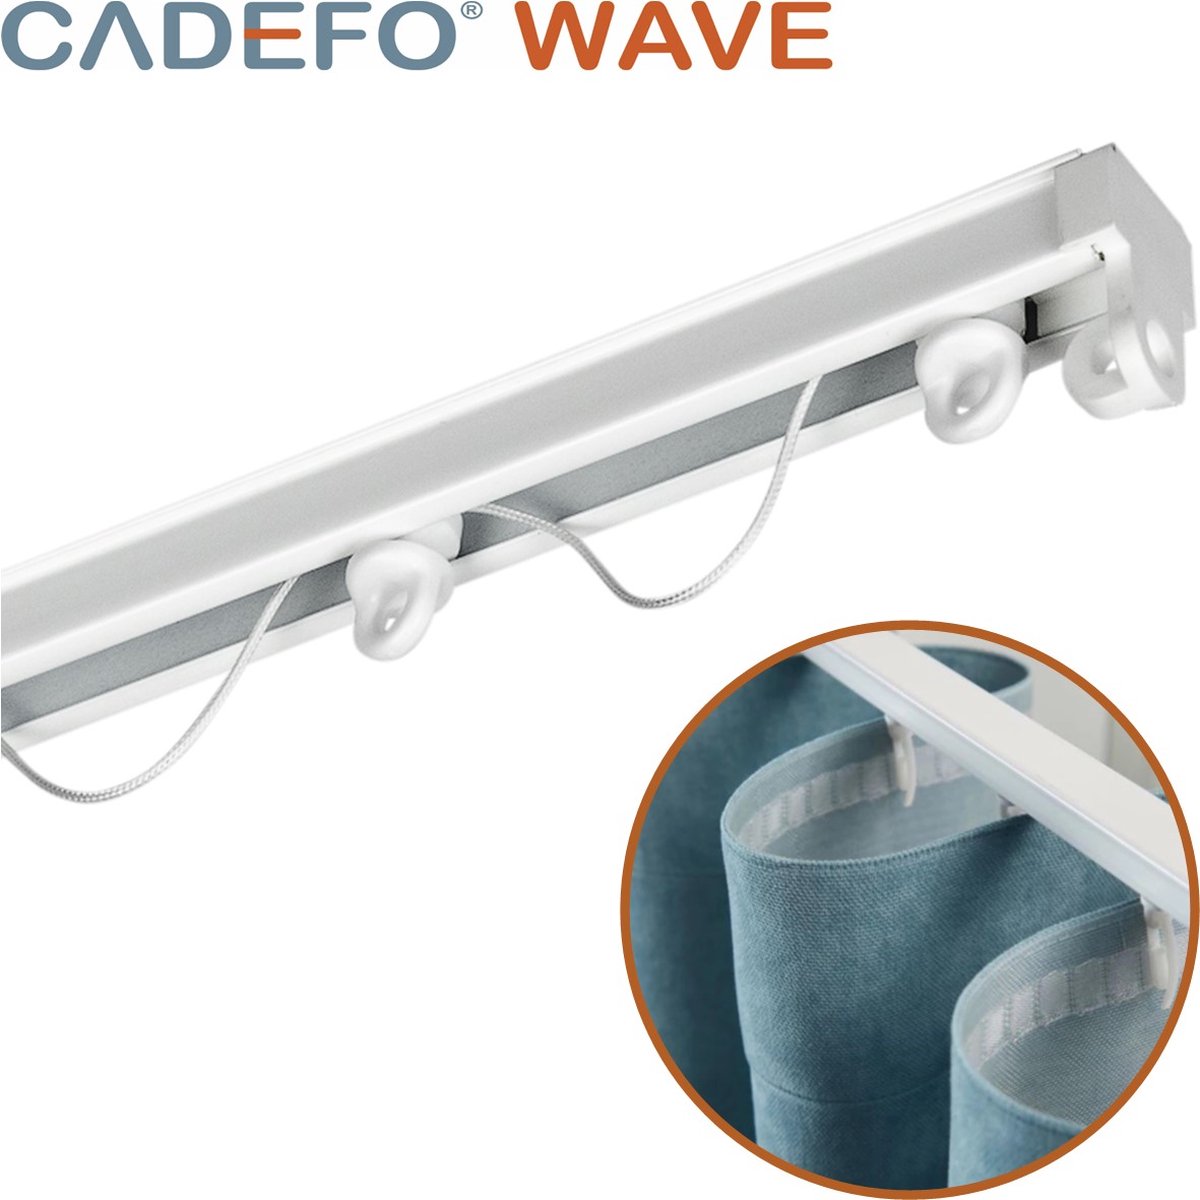 CADEFO WAVE (451 - 500 cm) Gordijnrails - Compleet op maat! - UIT 1 STUK - Leverbaar tot 6 meter - Plafondbevestiging - Lengte 495 cm